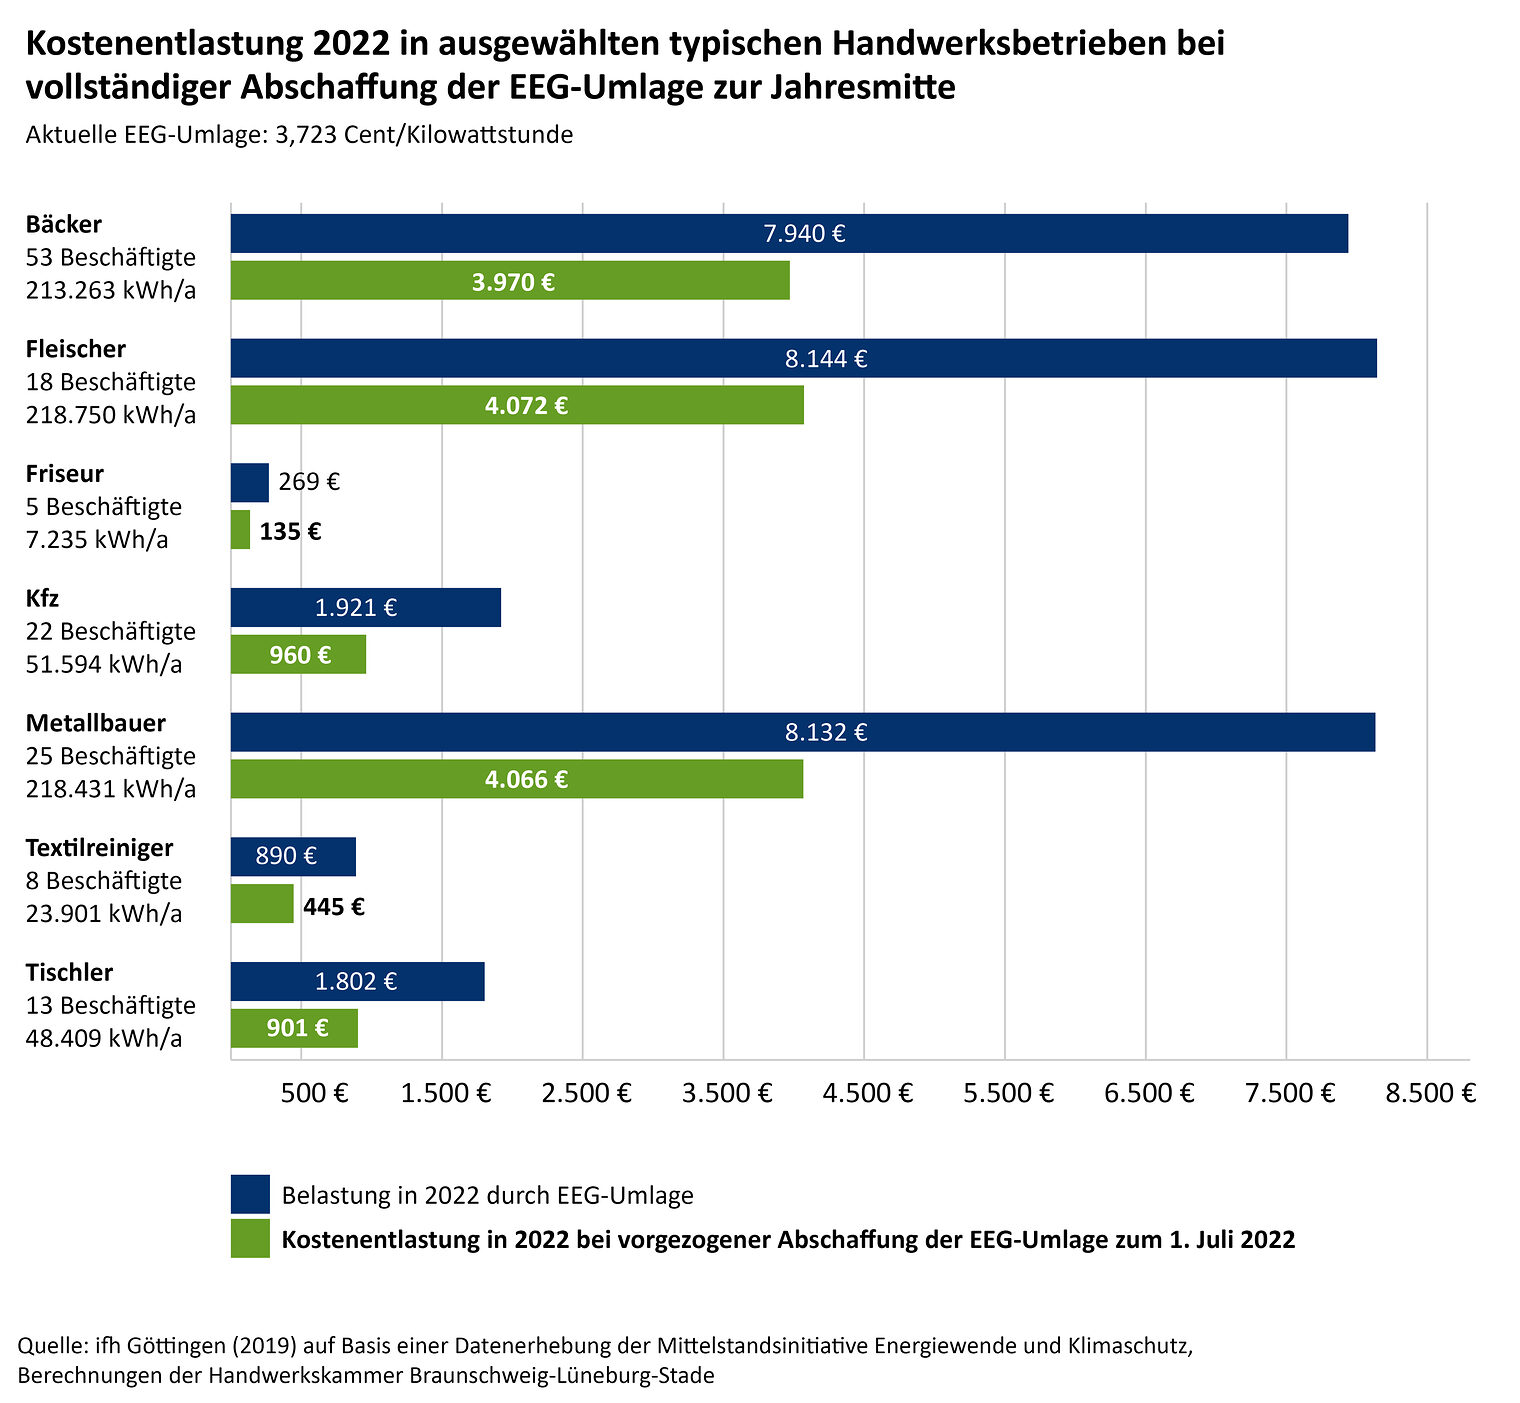 Infografik "Kostenentlastung 2022 in ausgewählten typischen Handwerksbetrieben bei vollständiger Abschaffung der EEG-Umlage zur Jahresmitte"